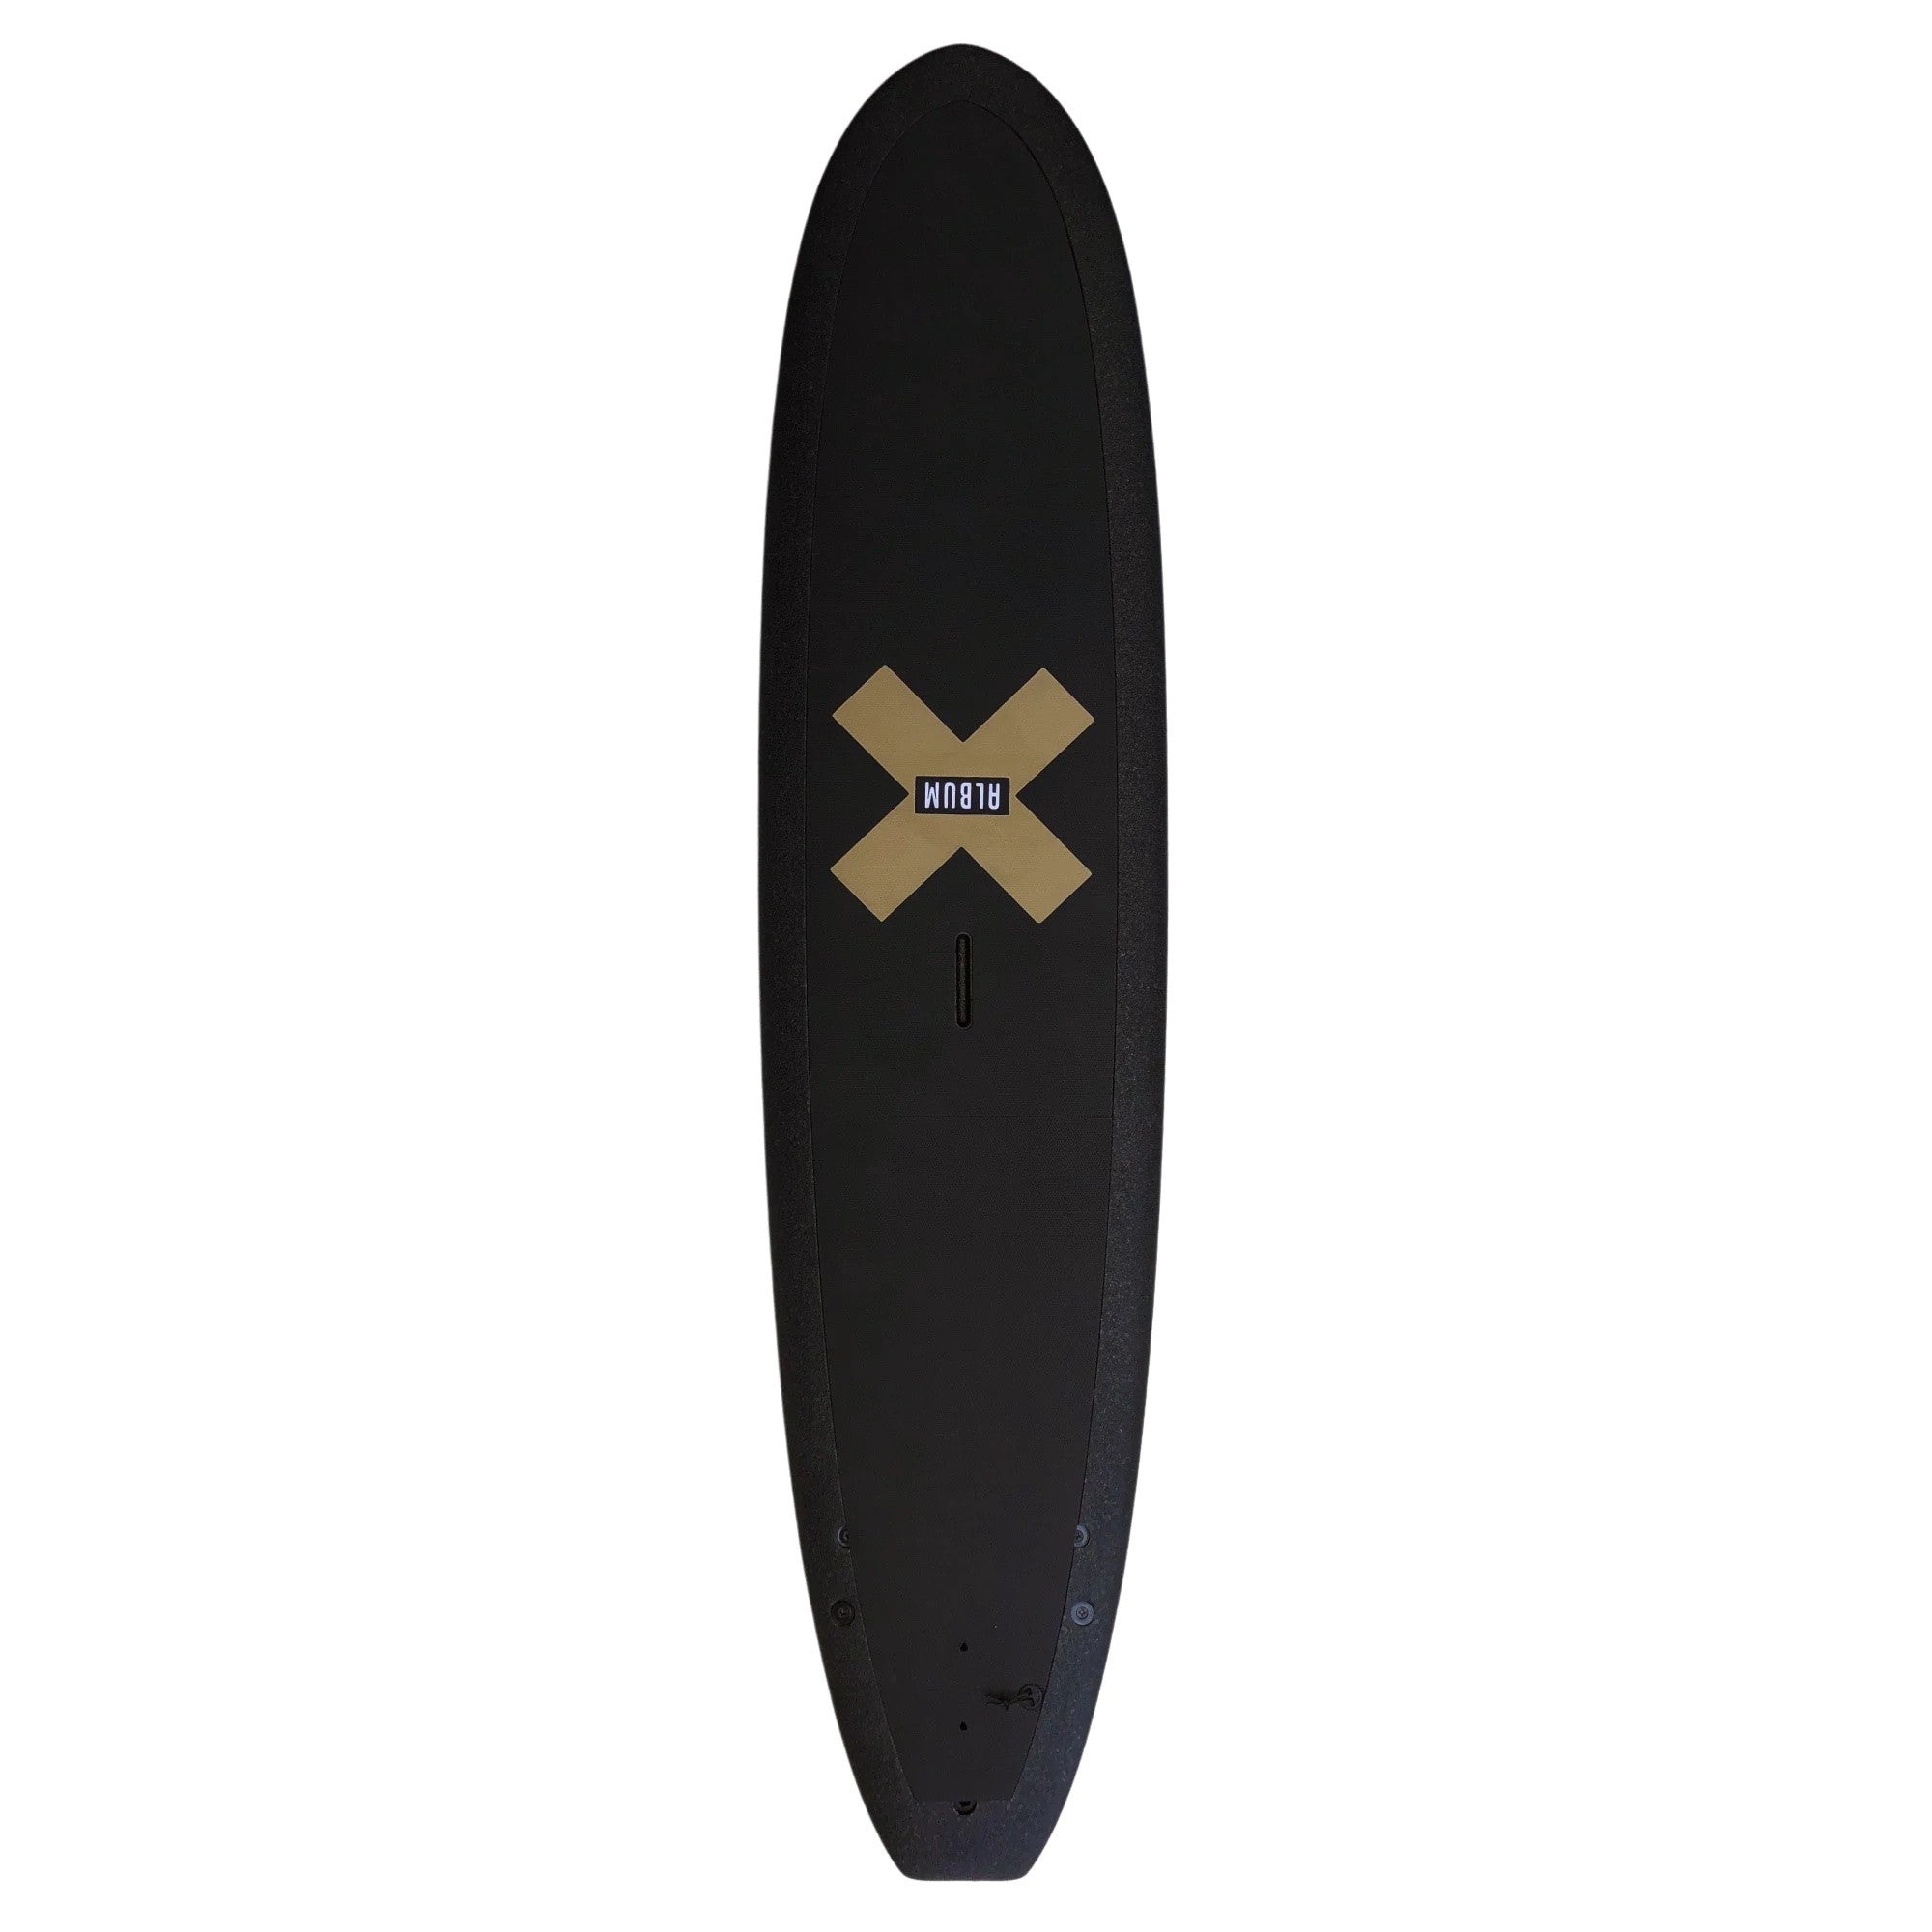 ALBUM Surfboards - Kookalog 7'11 Soft Top - Golden X